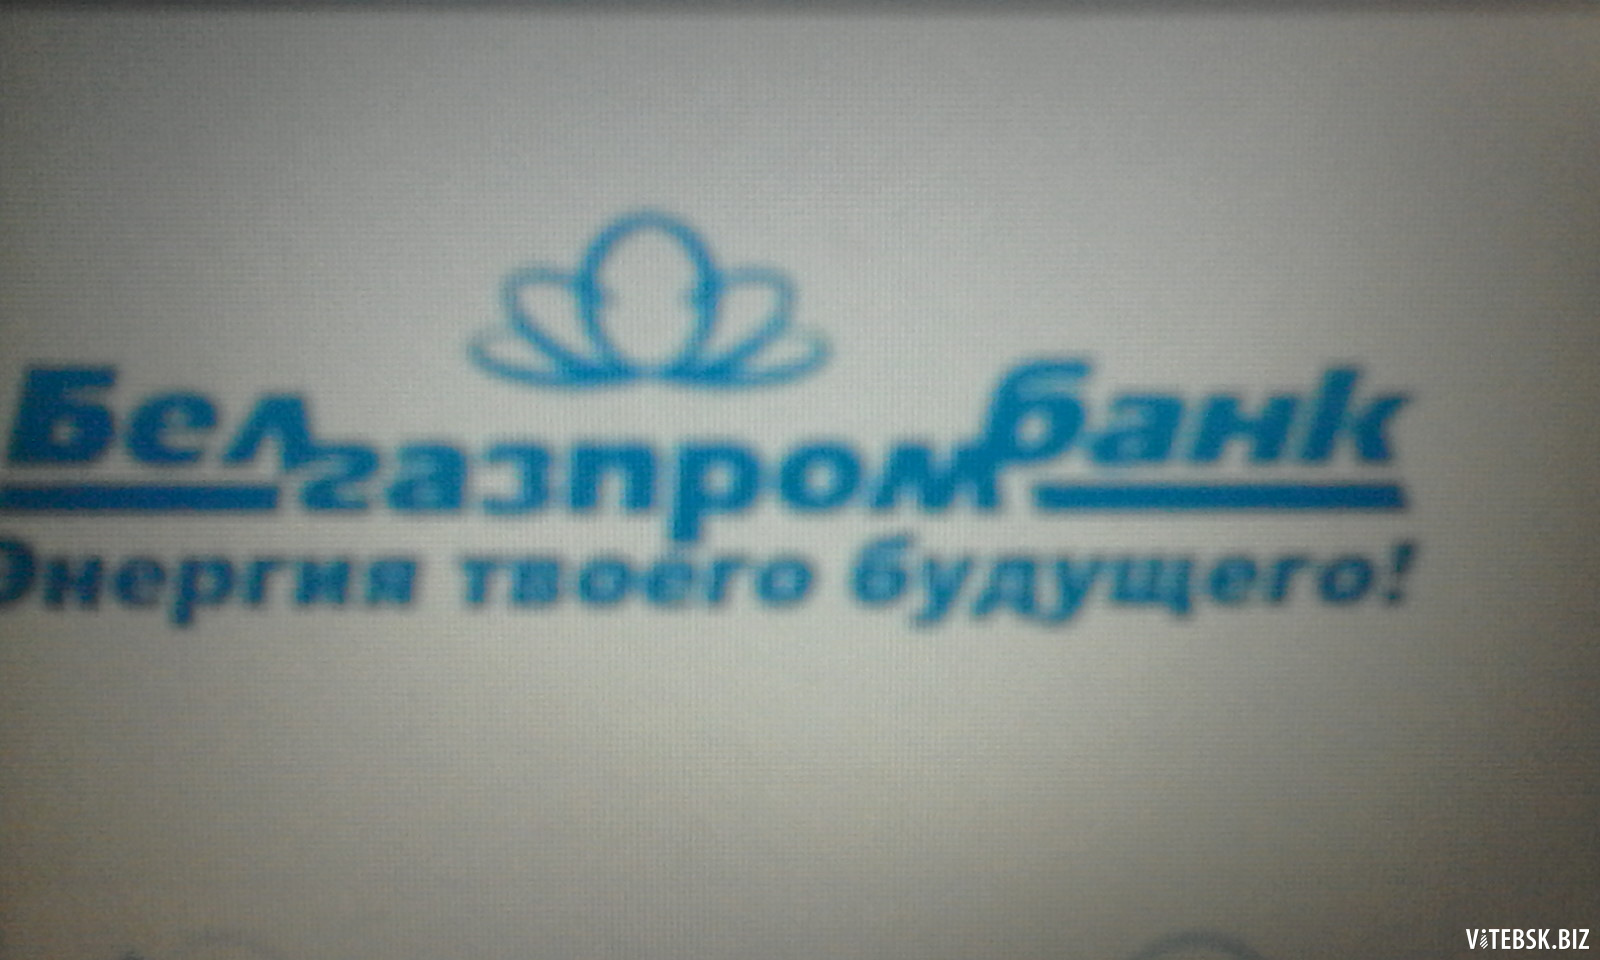 Белгазпромбанк логотип. Карта Белгазпромбанка. Белгазпромбанк печать. Белгазпромбанк синяя печать. Банк партнер белгазпромбанк